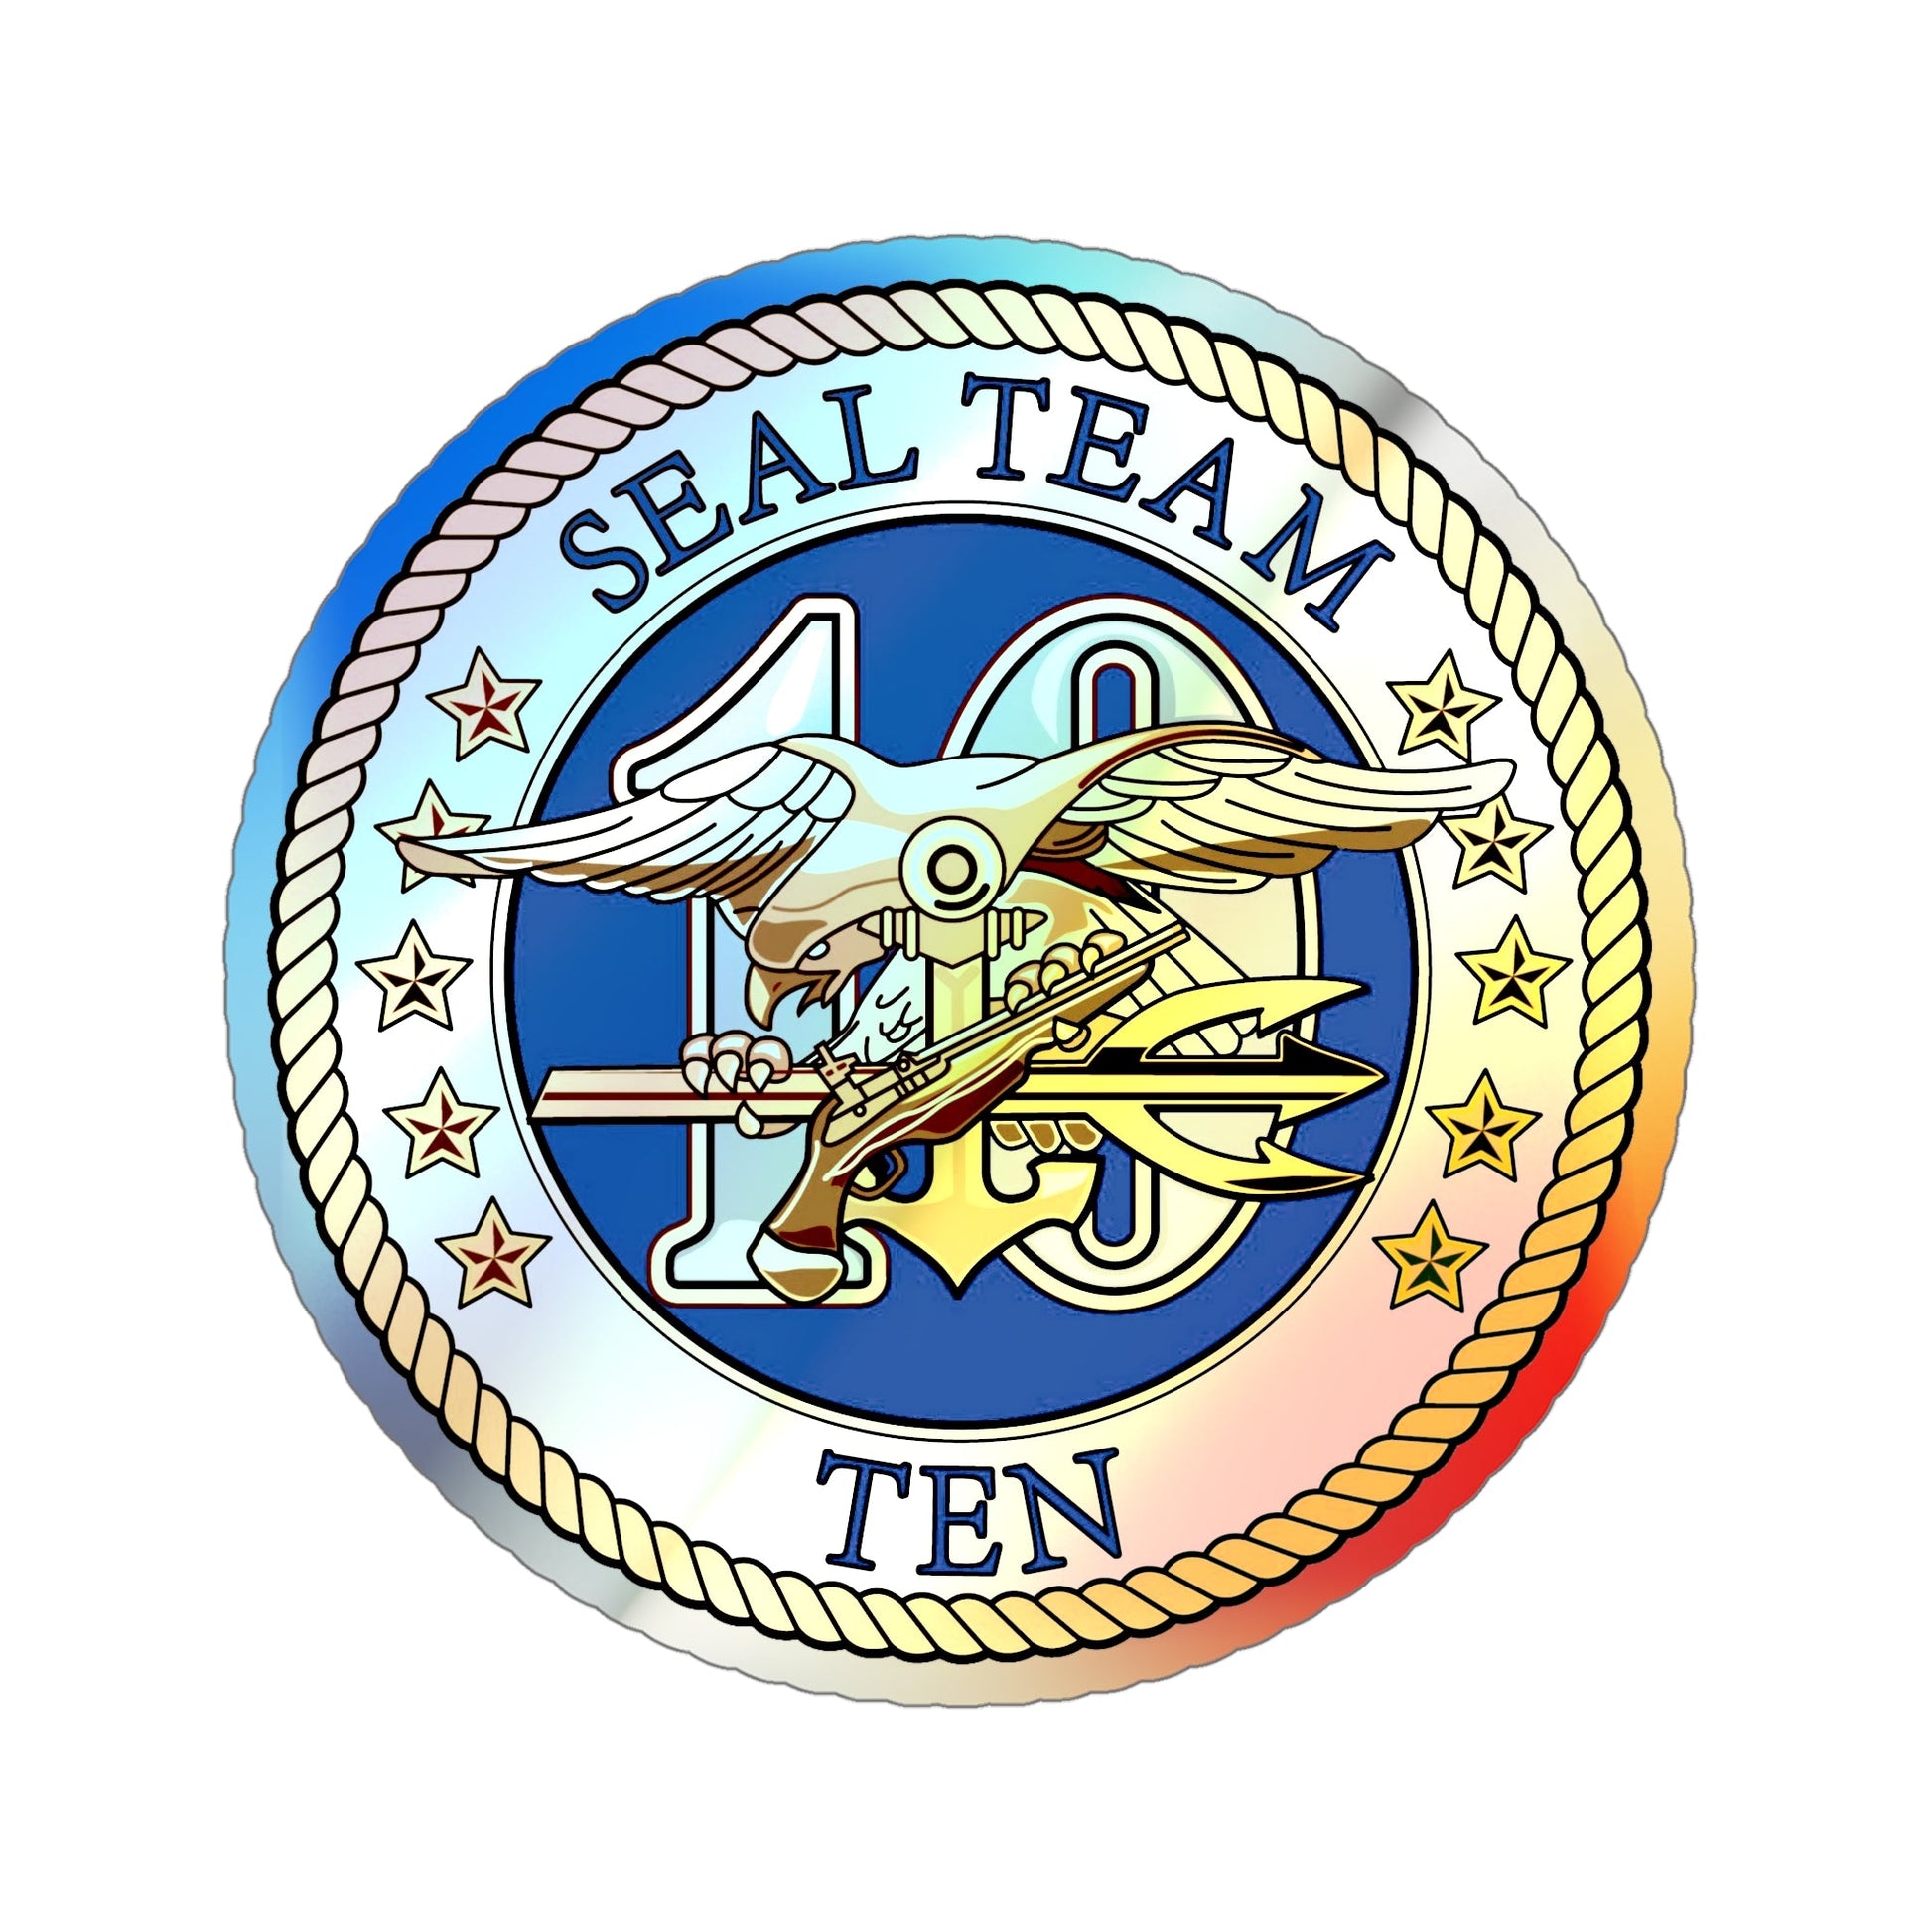 Seal Team 10 (U.S. Navy) Holographic STICKER Die-Cut Vinyl Decal-6 Inch-The Sticker Space